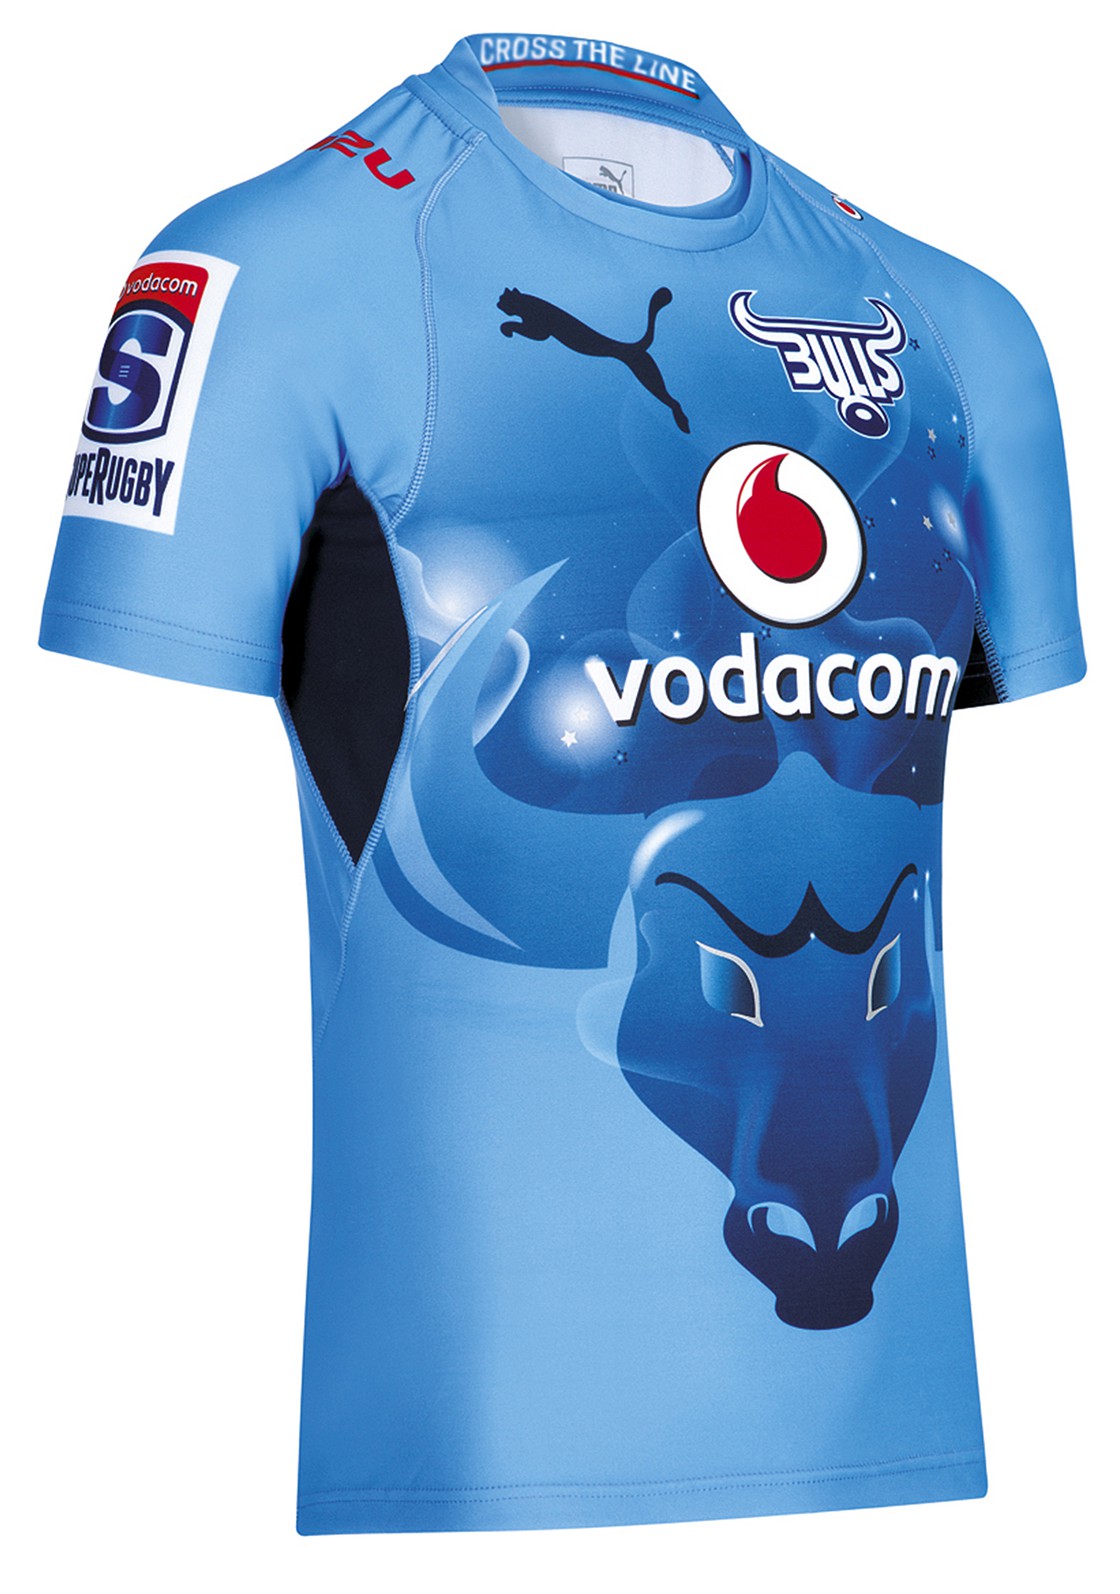 new blue bulls jersey 2016